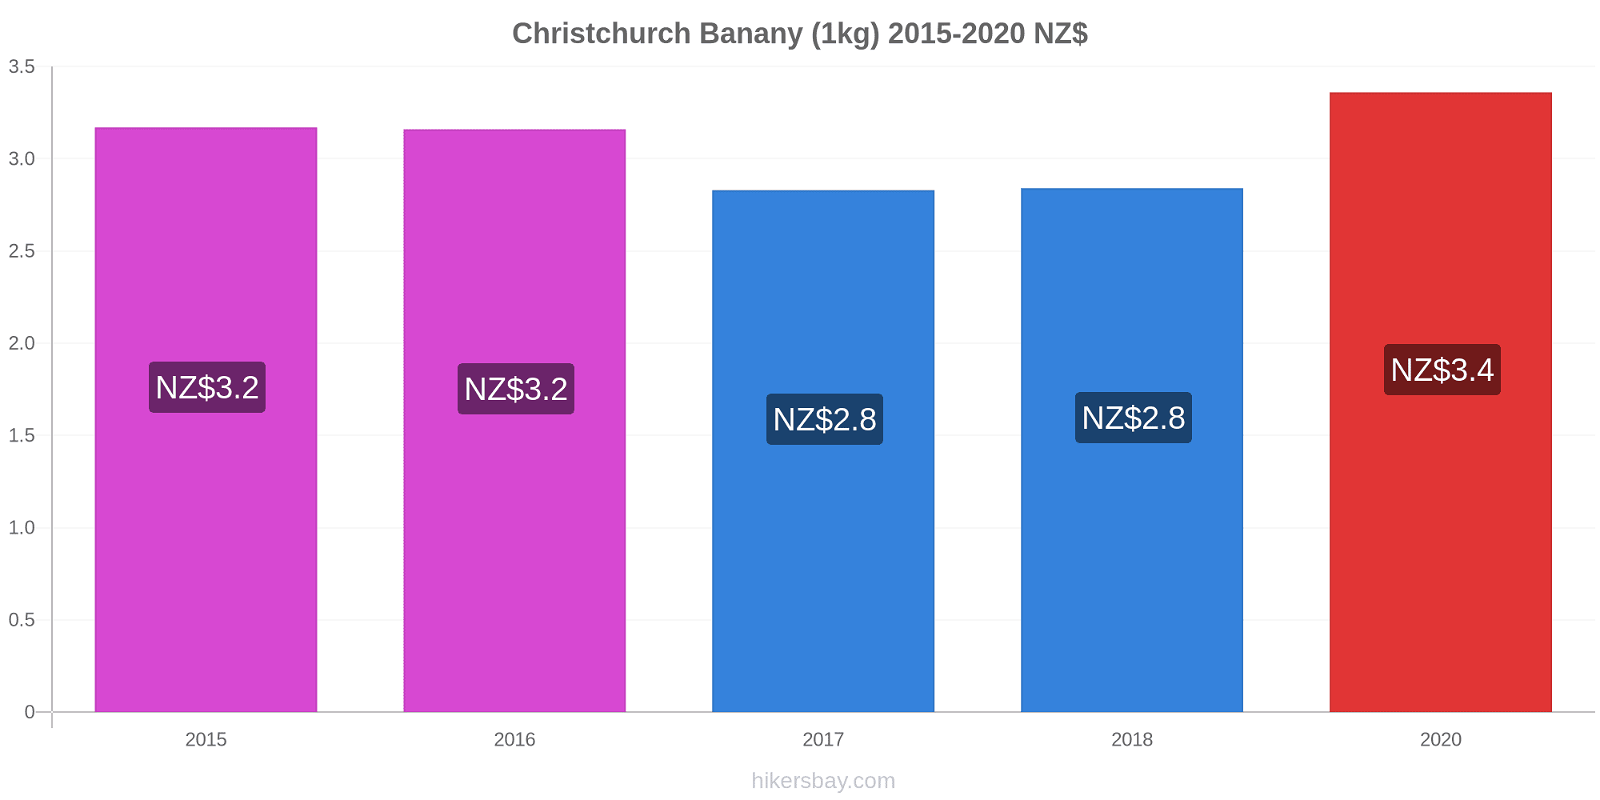 Christchurch zmiany cen Banany (1kg) hikersbay.com